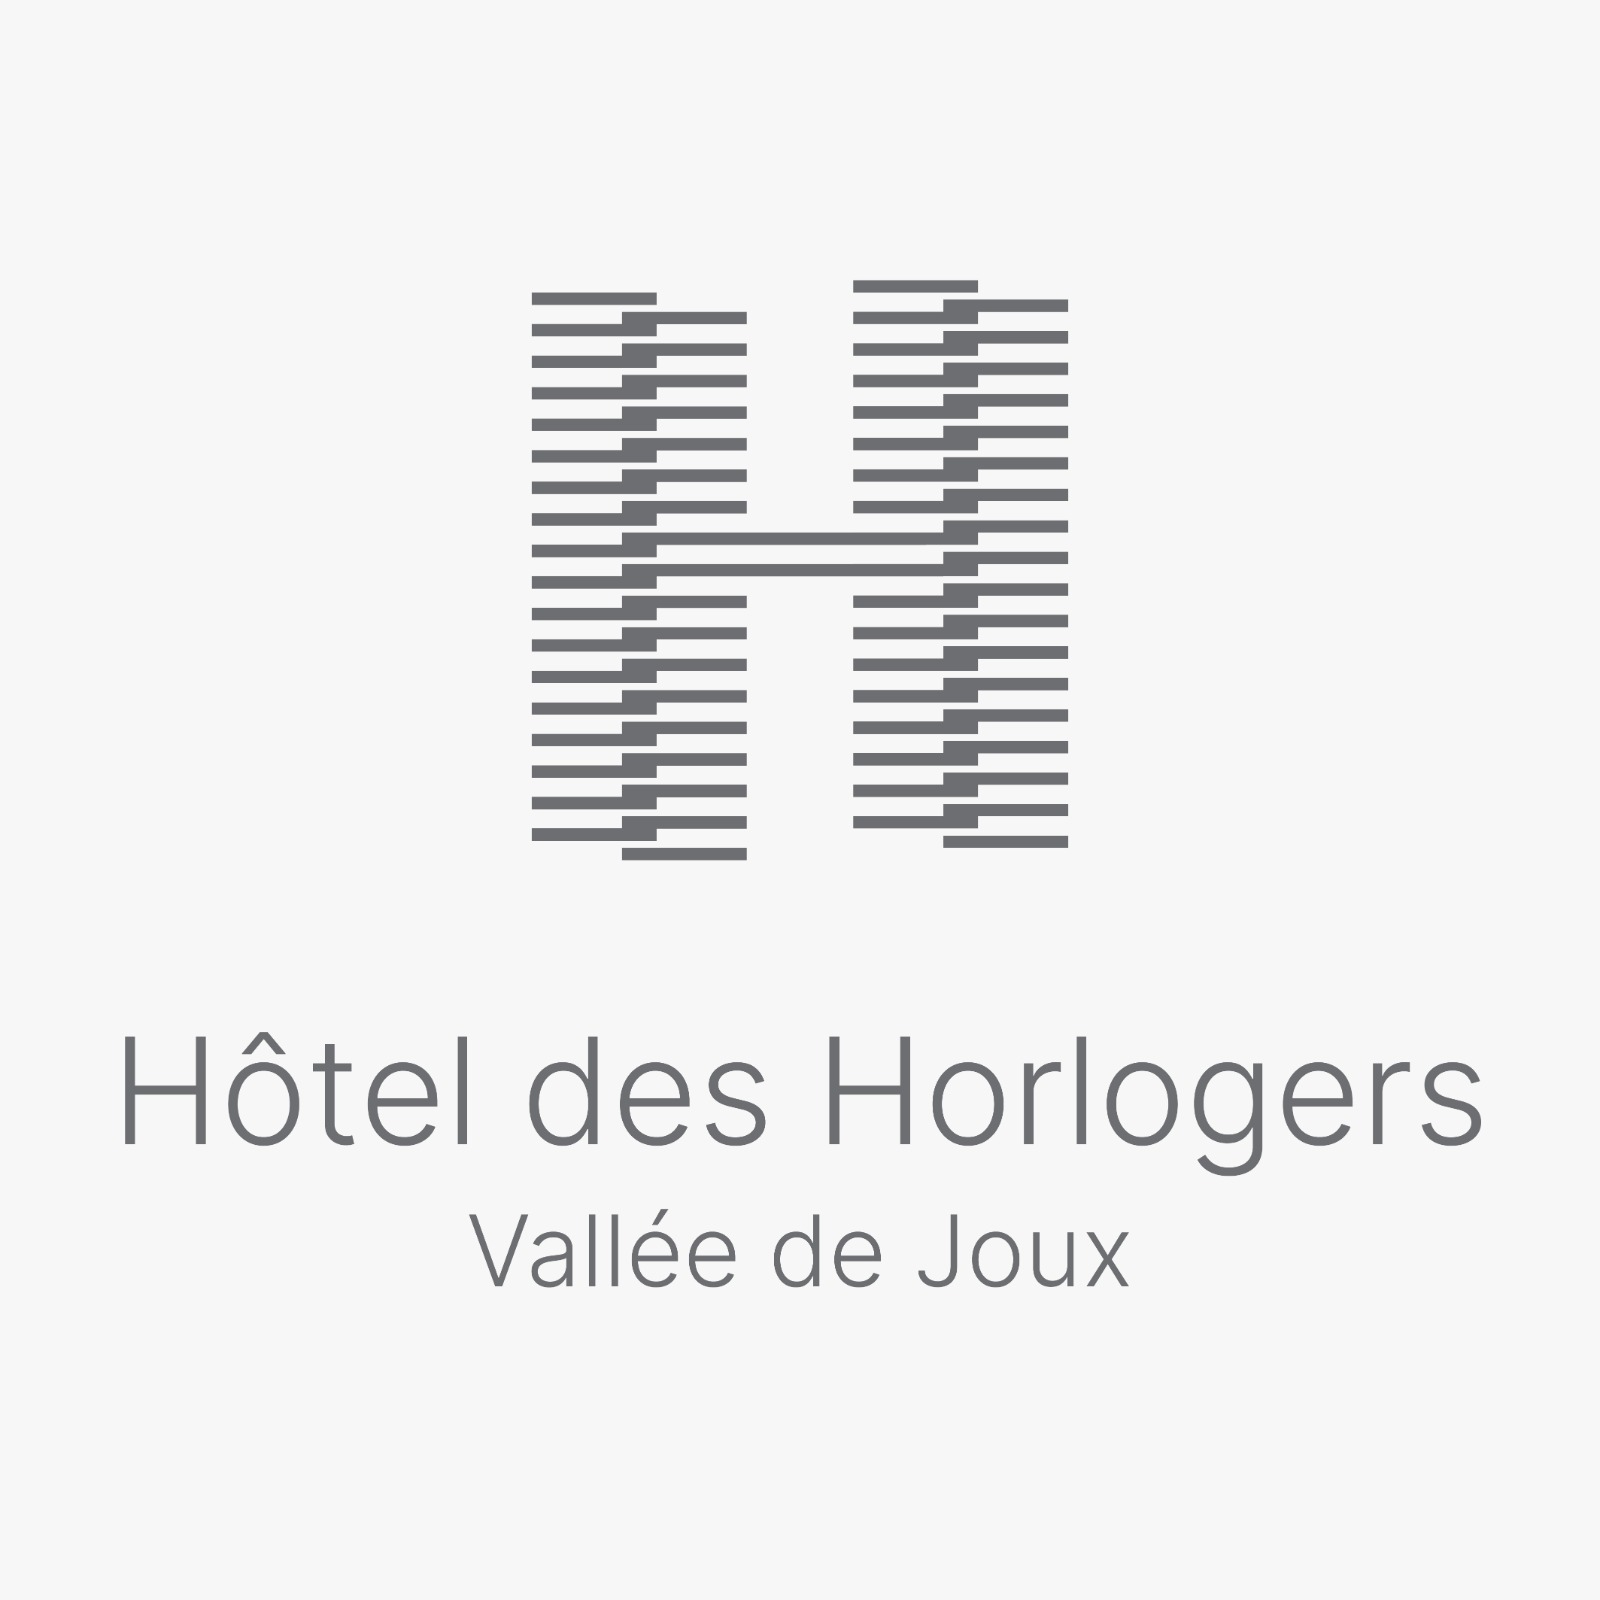 Hôtel des Horlogers - Vallée de Joux